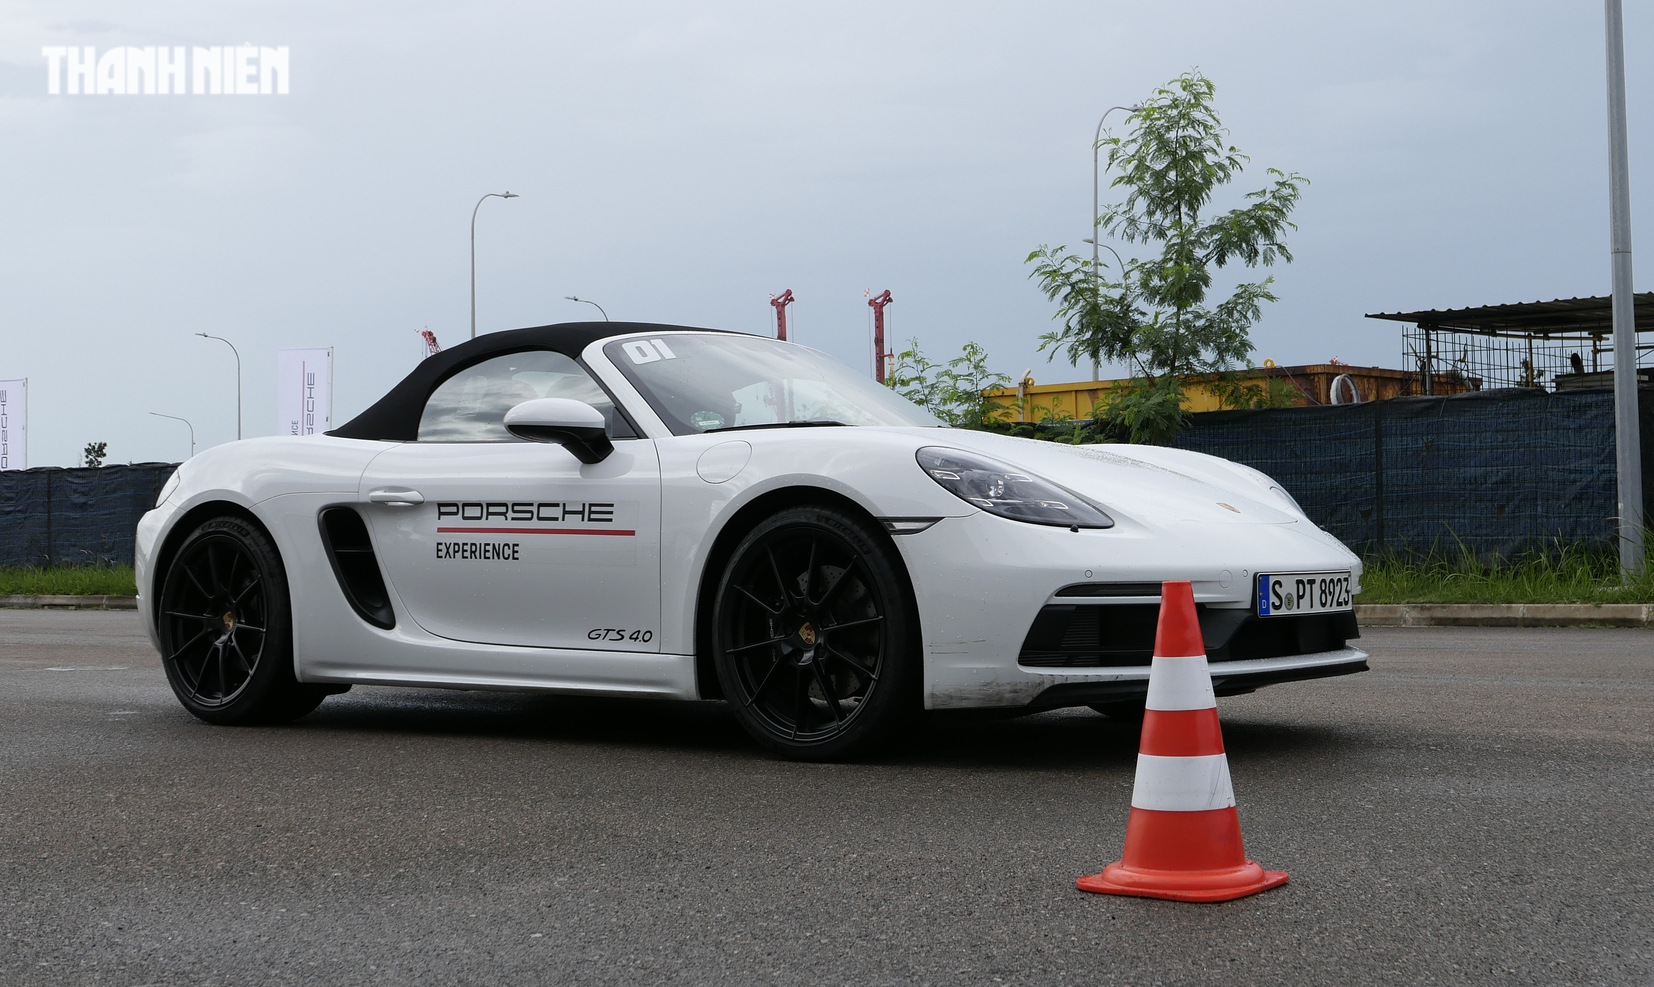 Porsche mang dàn xe sang trị giá triệu đô cho khách hàng luyện tay lái - Ảnh 6.